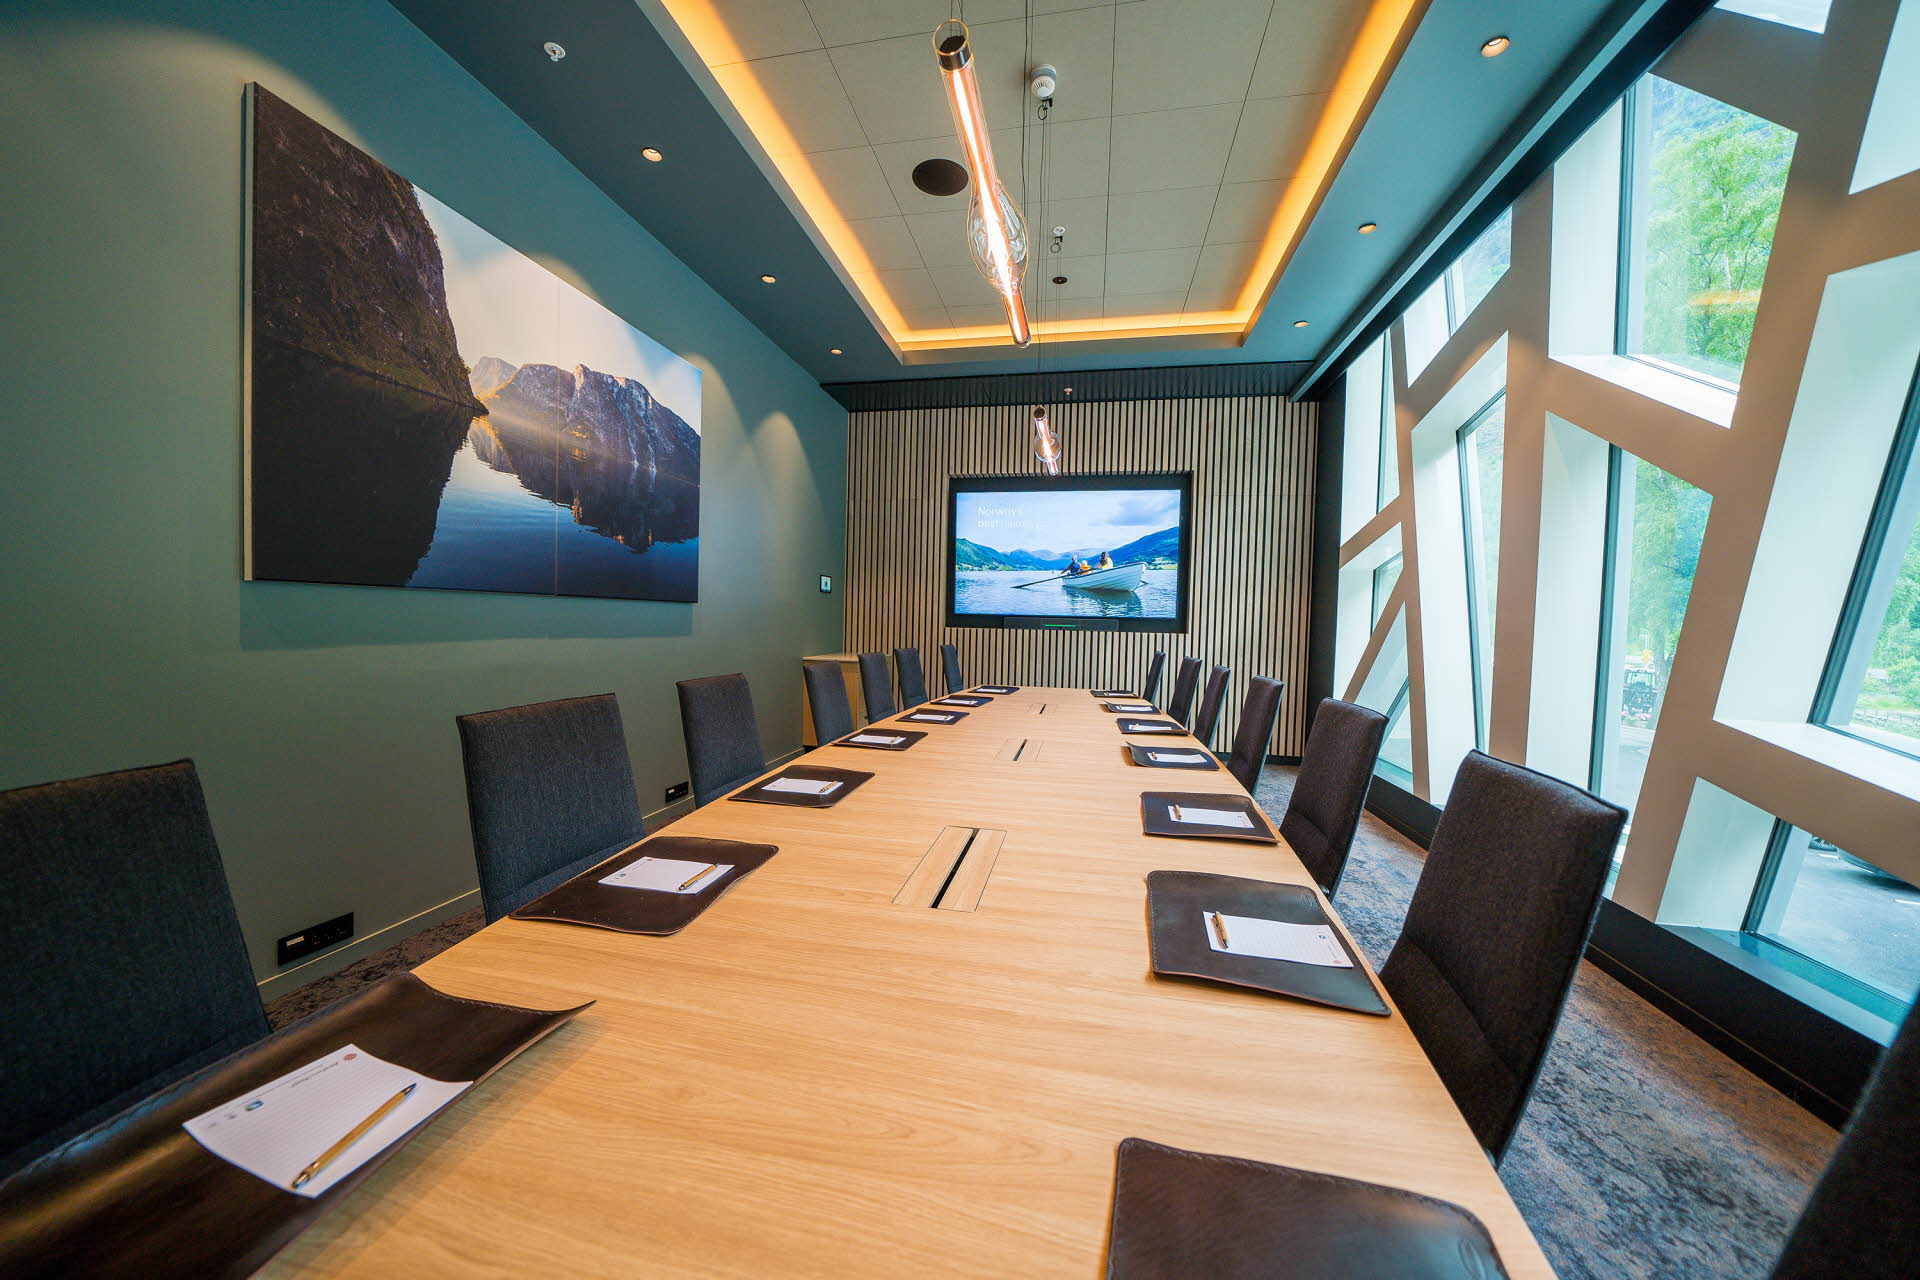 Et møterom med styrebord med skinnplater, stoler, geometriske vinduer og skjerm. 